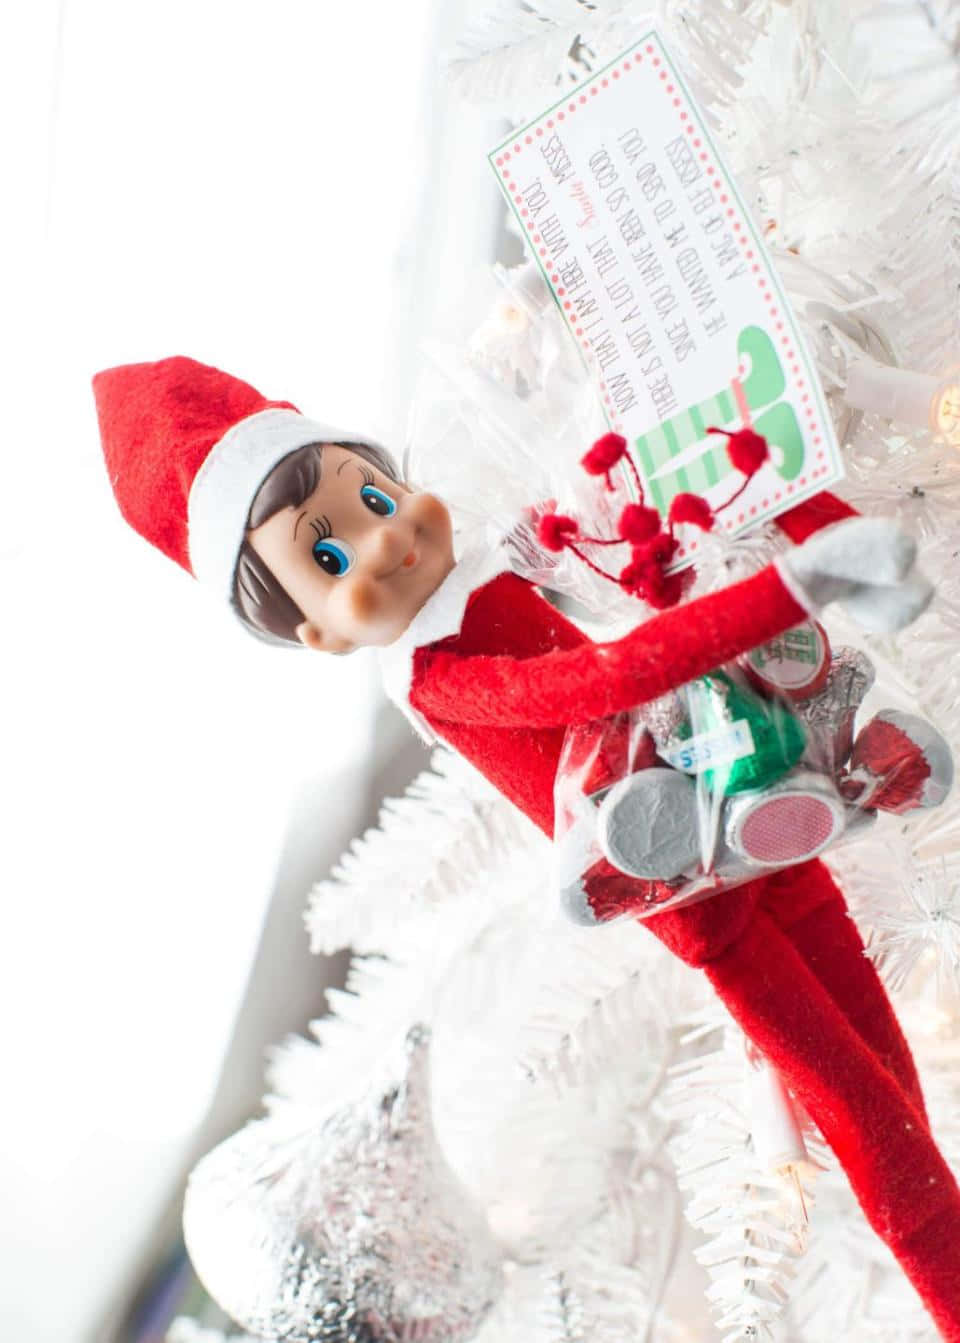 Feiernsie Die Feiertagssaison Mit Elf On The Shelf!